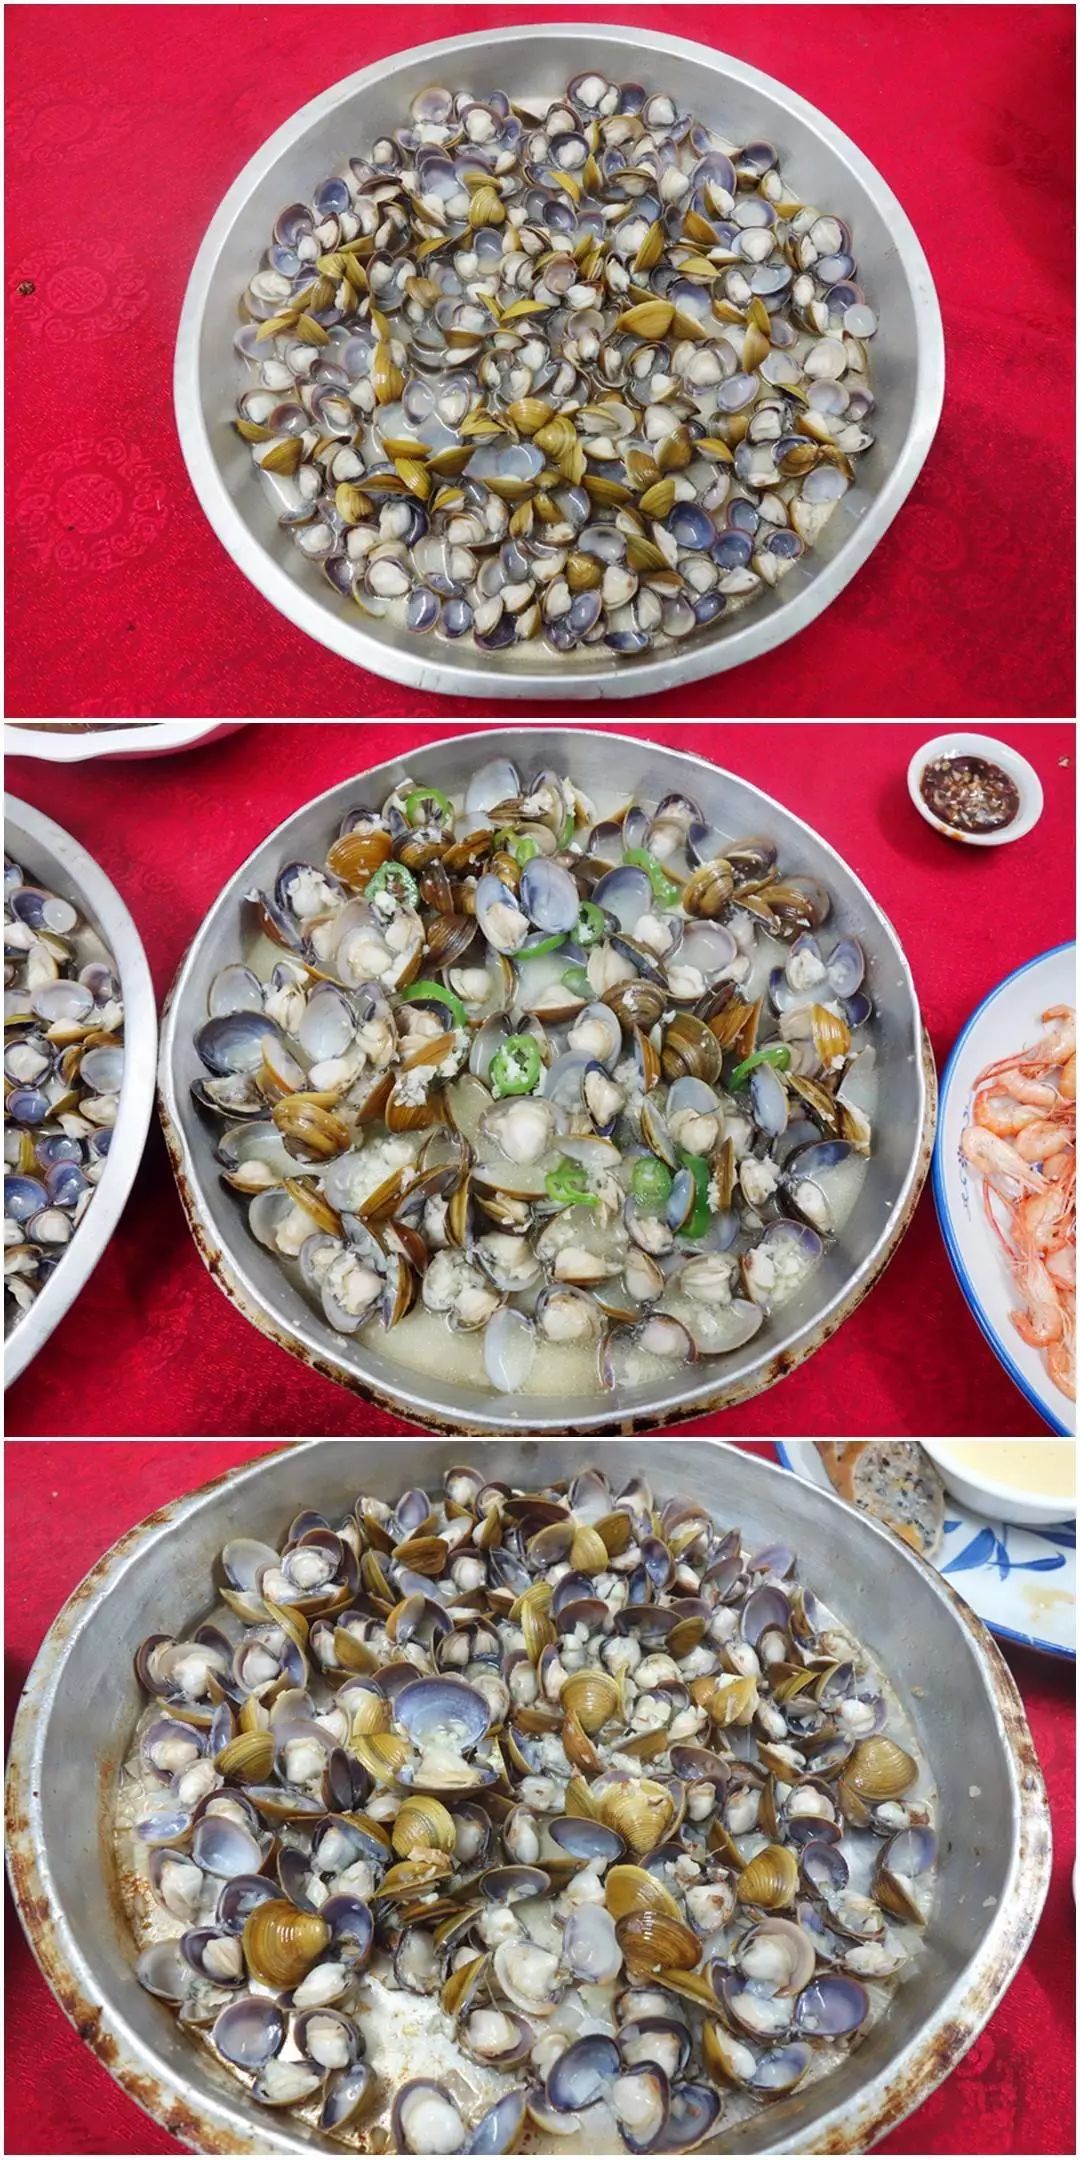 睦州【汇龙海鲜酒楼】传统美食,生猛河鲜,当造黄沙蚬;一家富有美味与